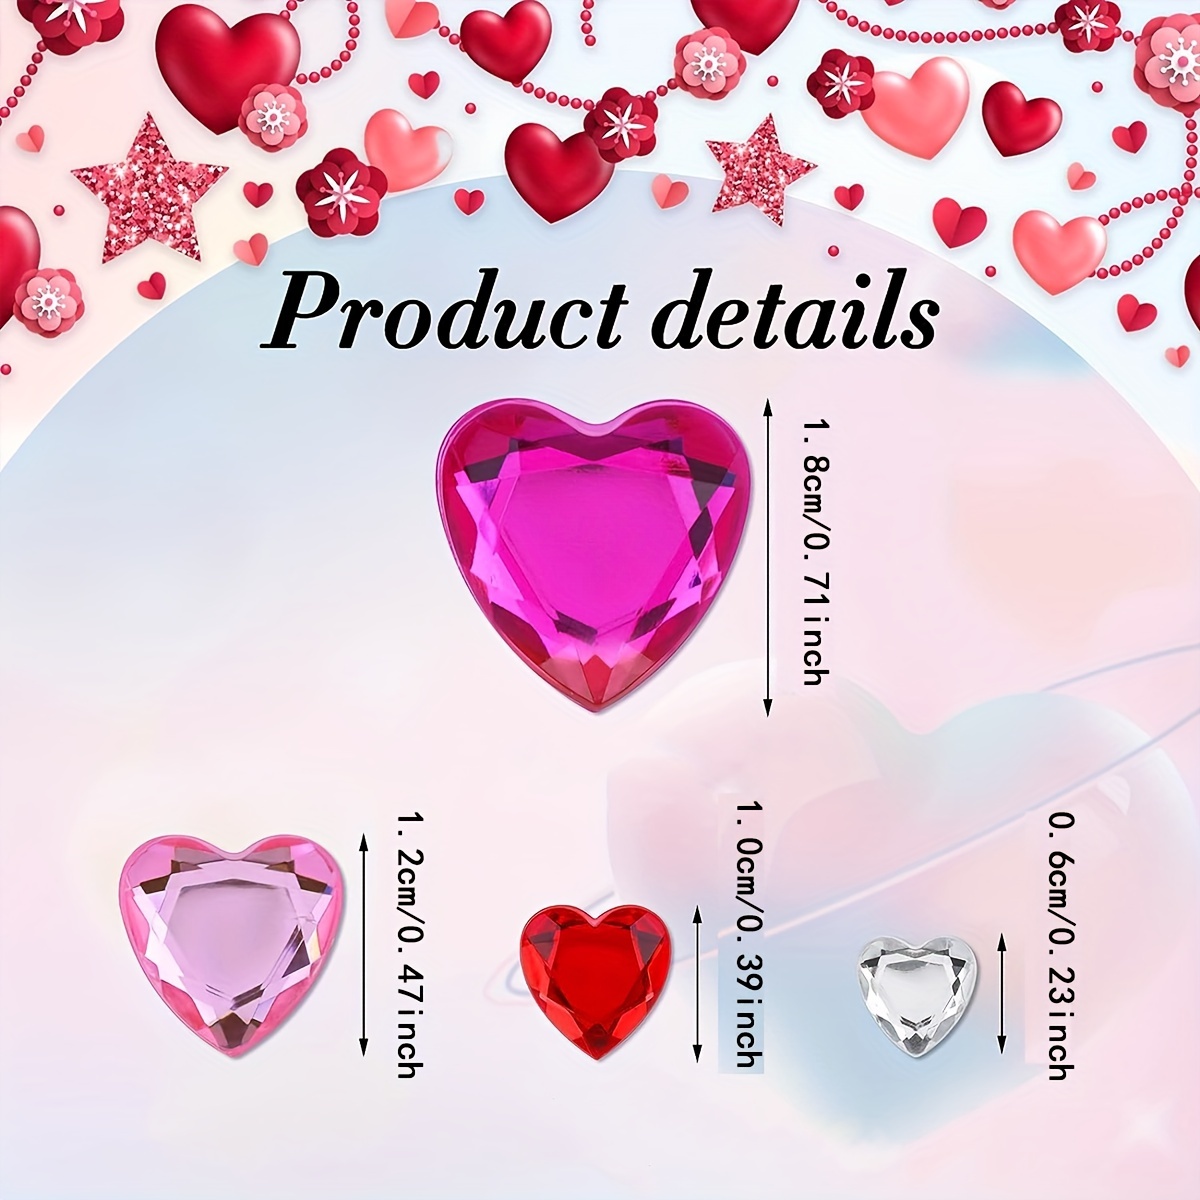 Acrylic Heart Gems